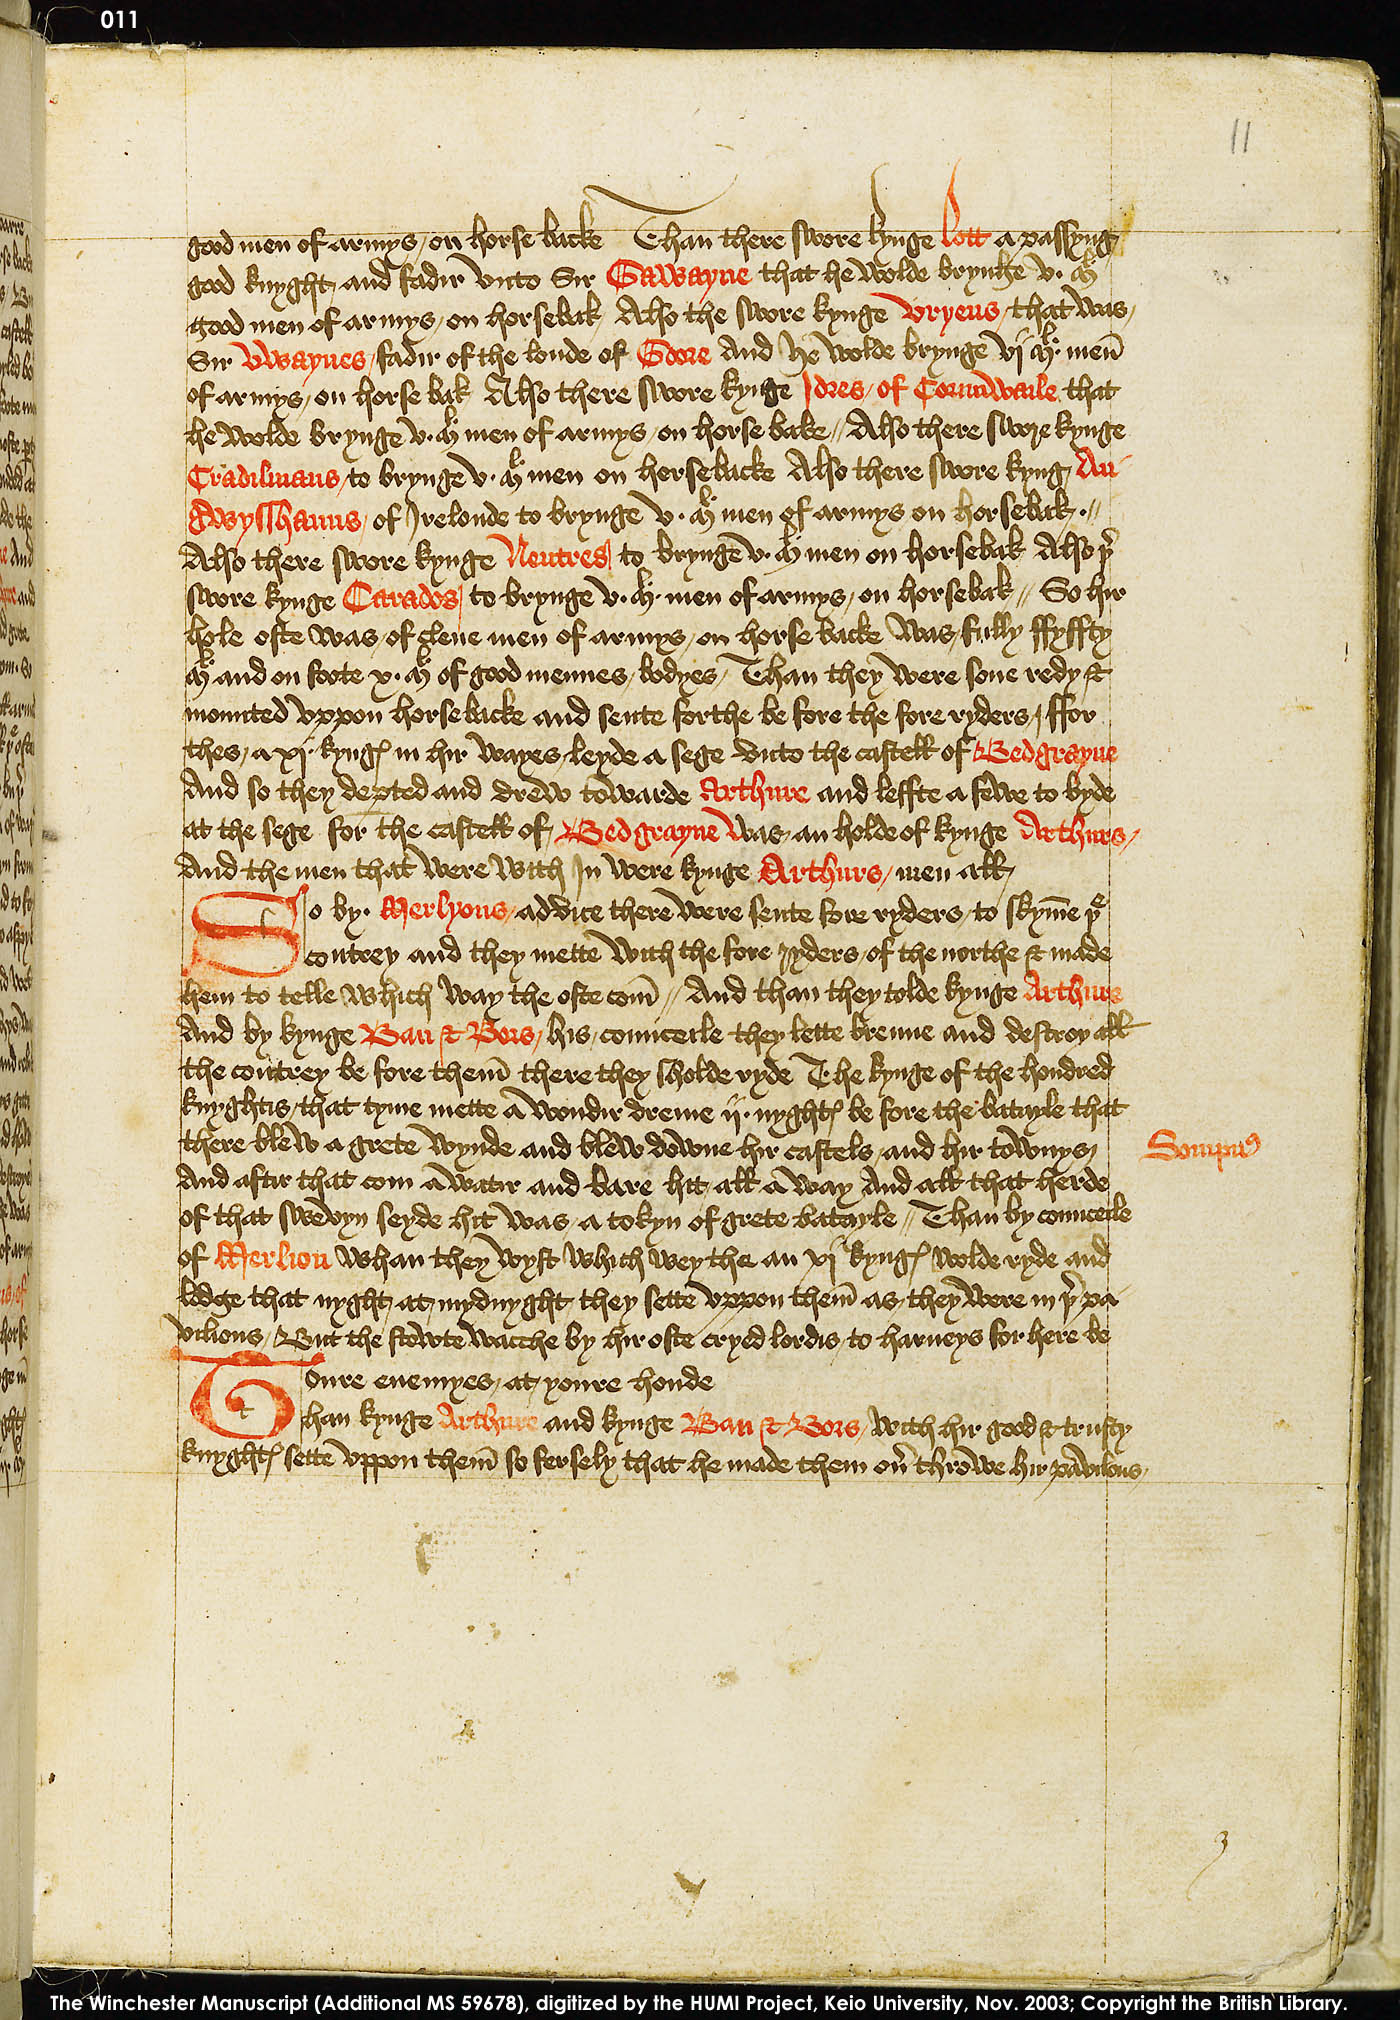 Folio 11r